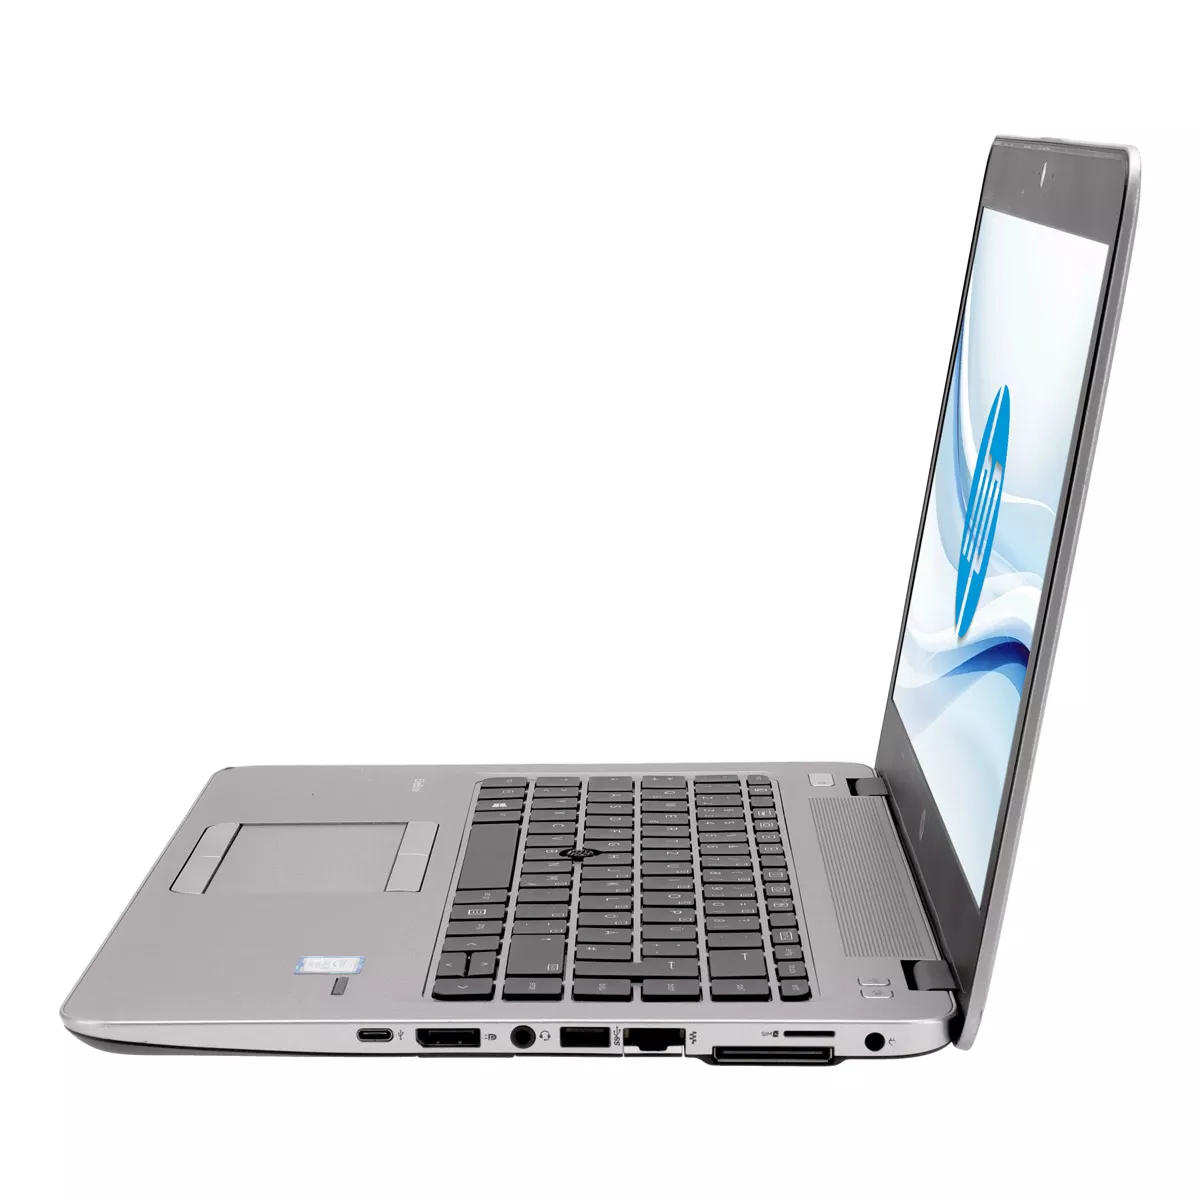 HP EliteBook 840 G4 Core i5 7300U Full-HD 8 GB DDR4 240 GB M.2 SSD B